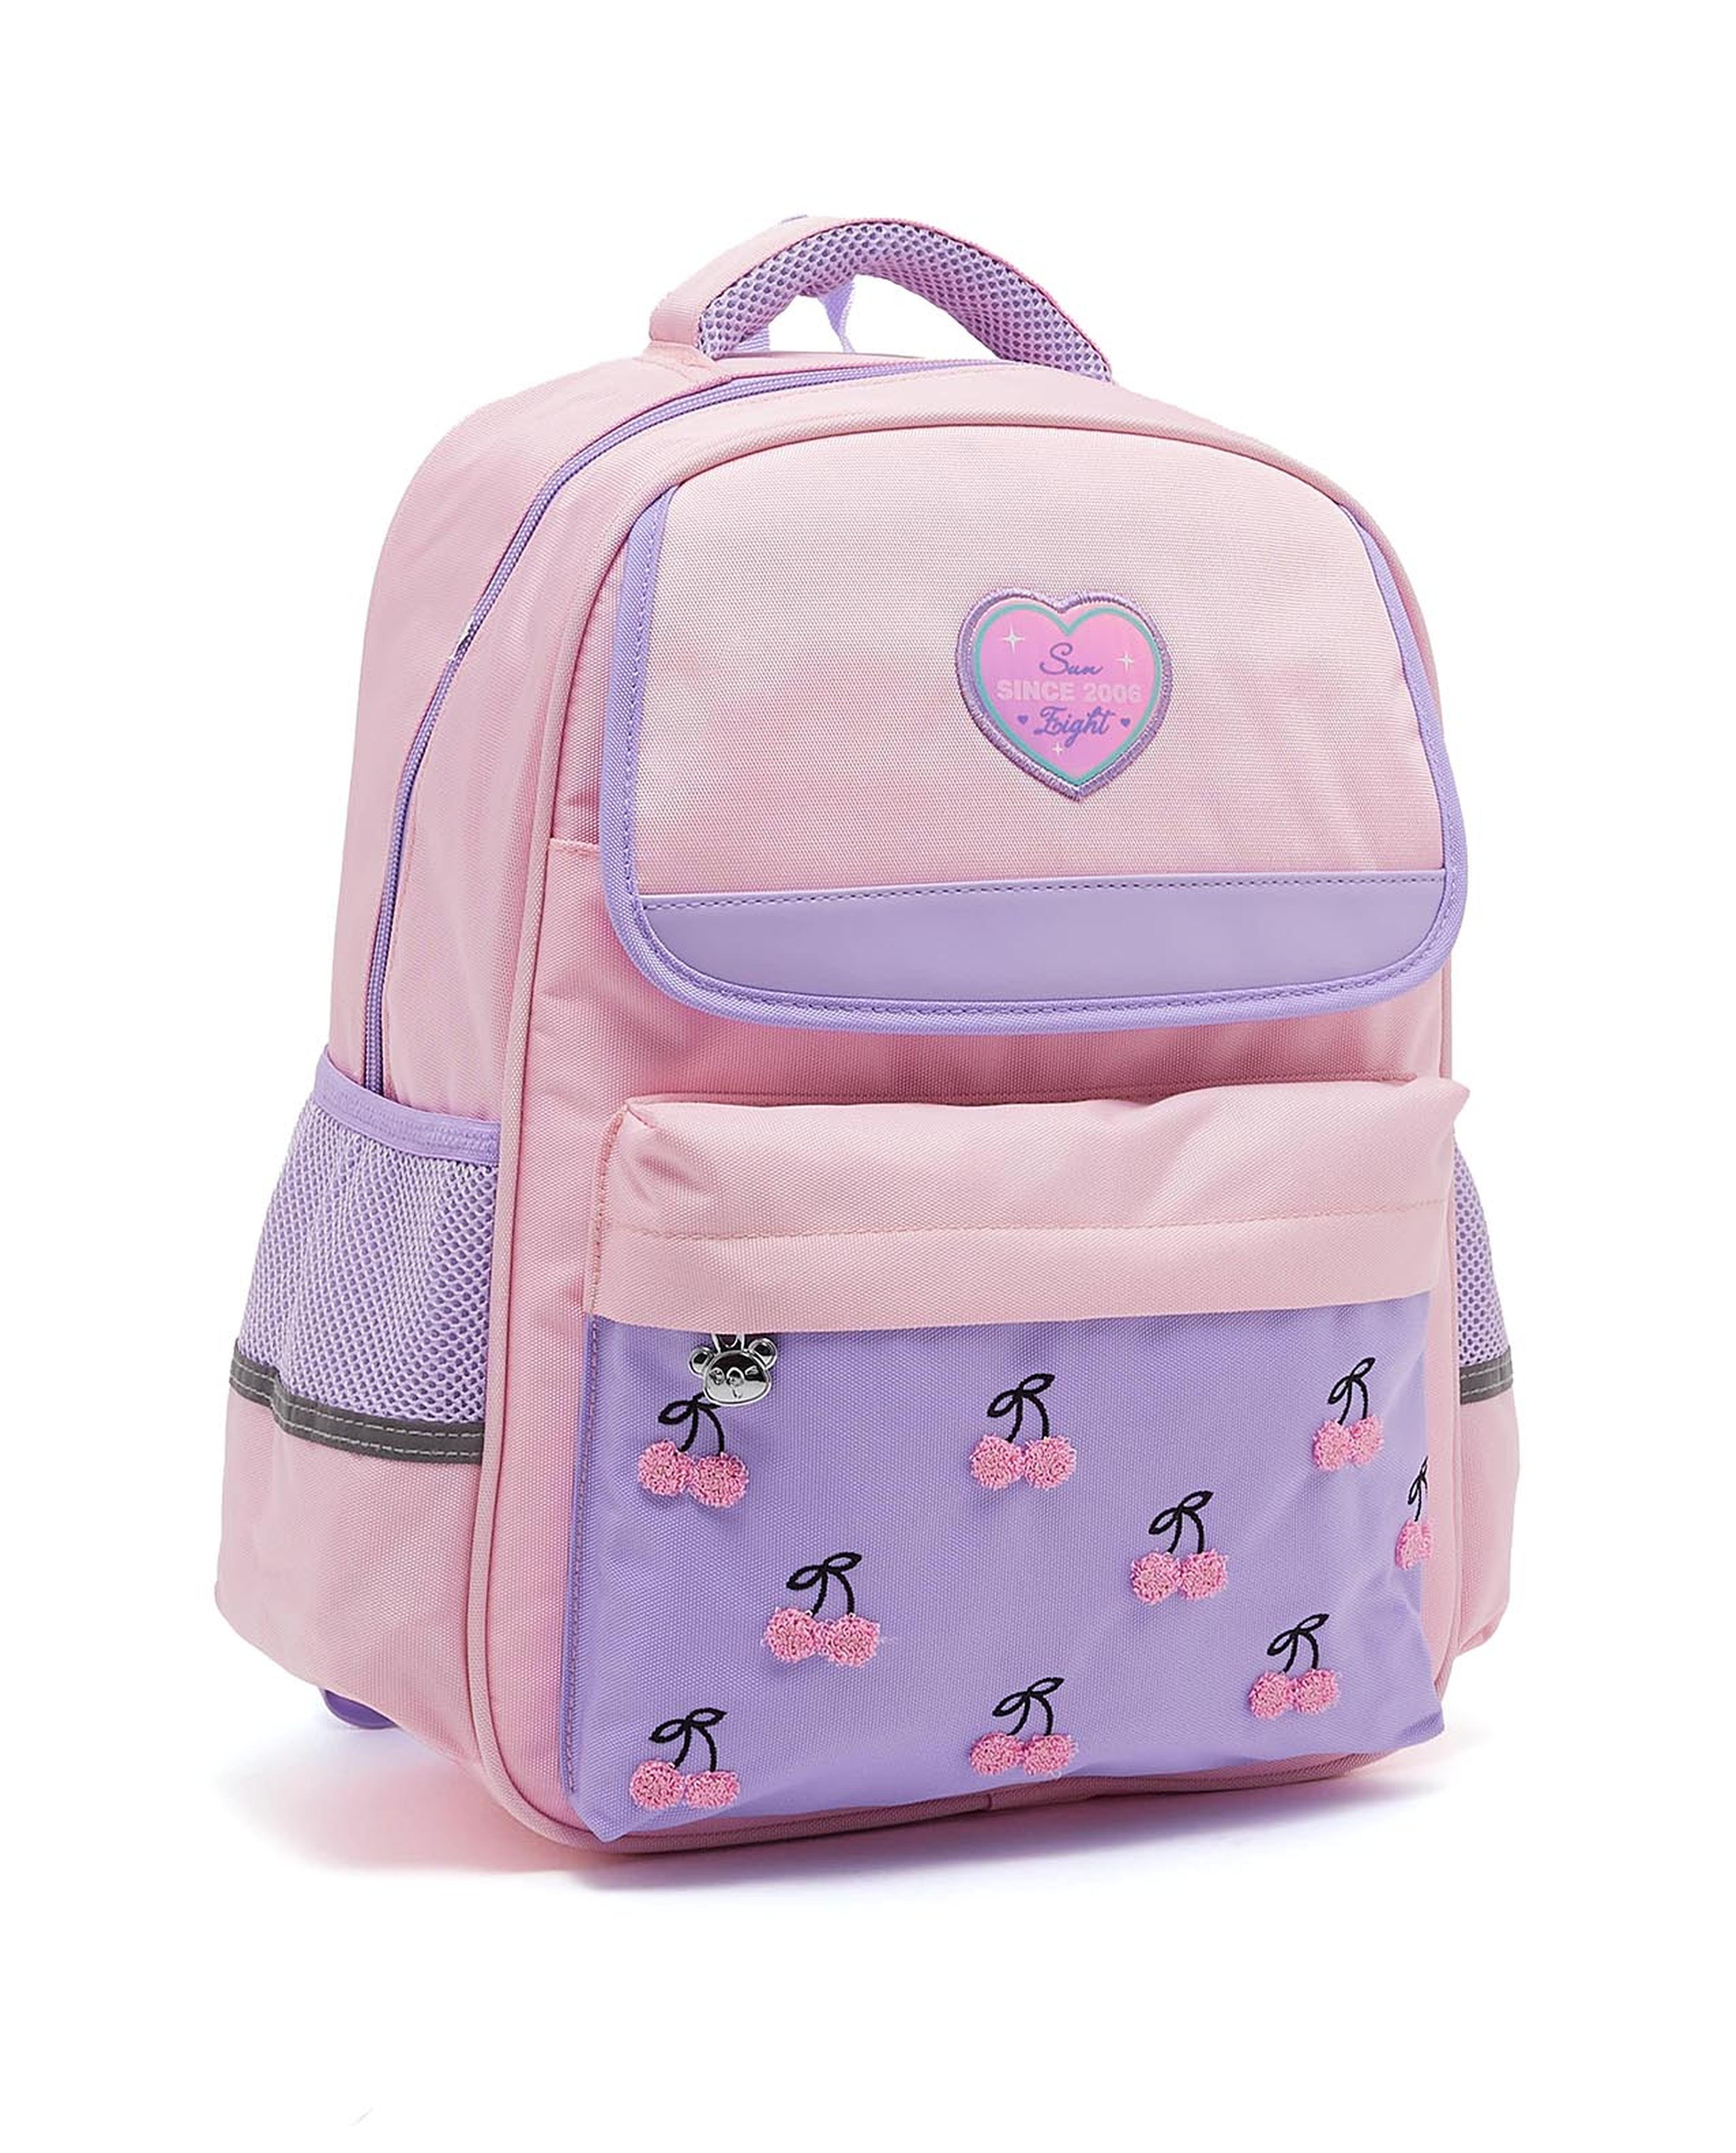 Cherry Printed School Backpack